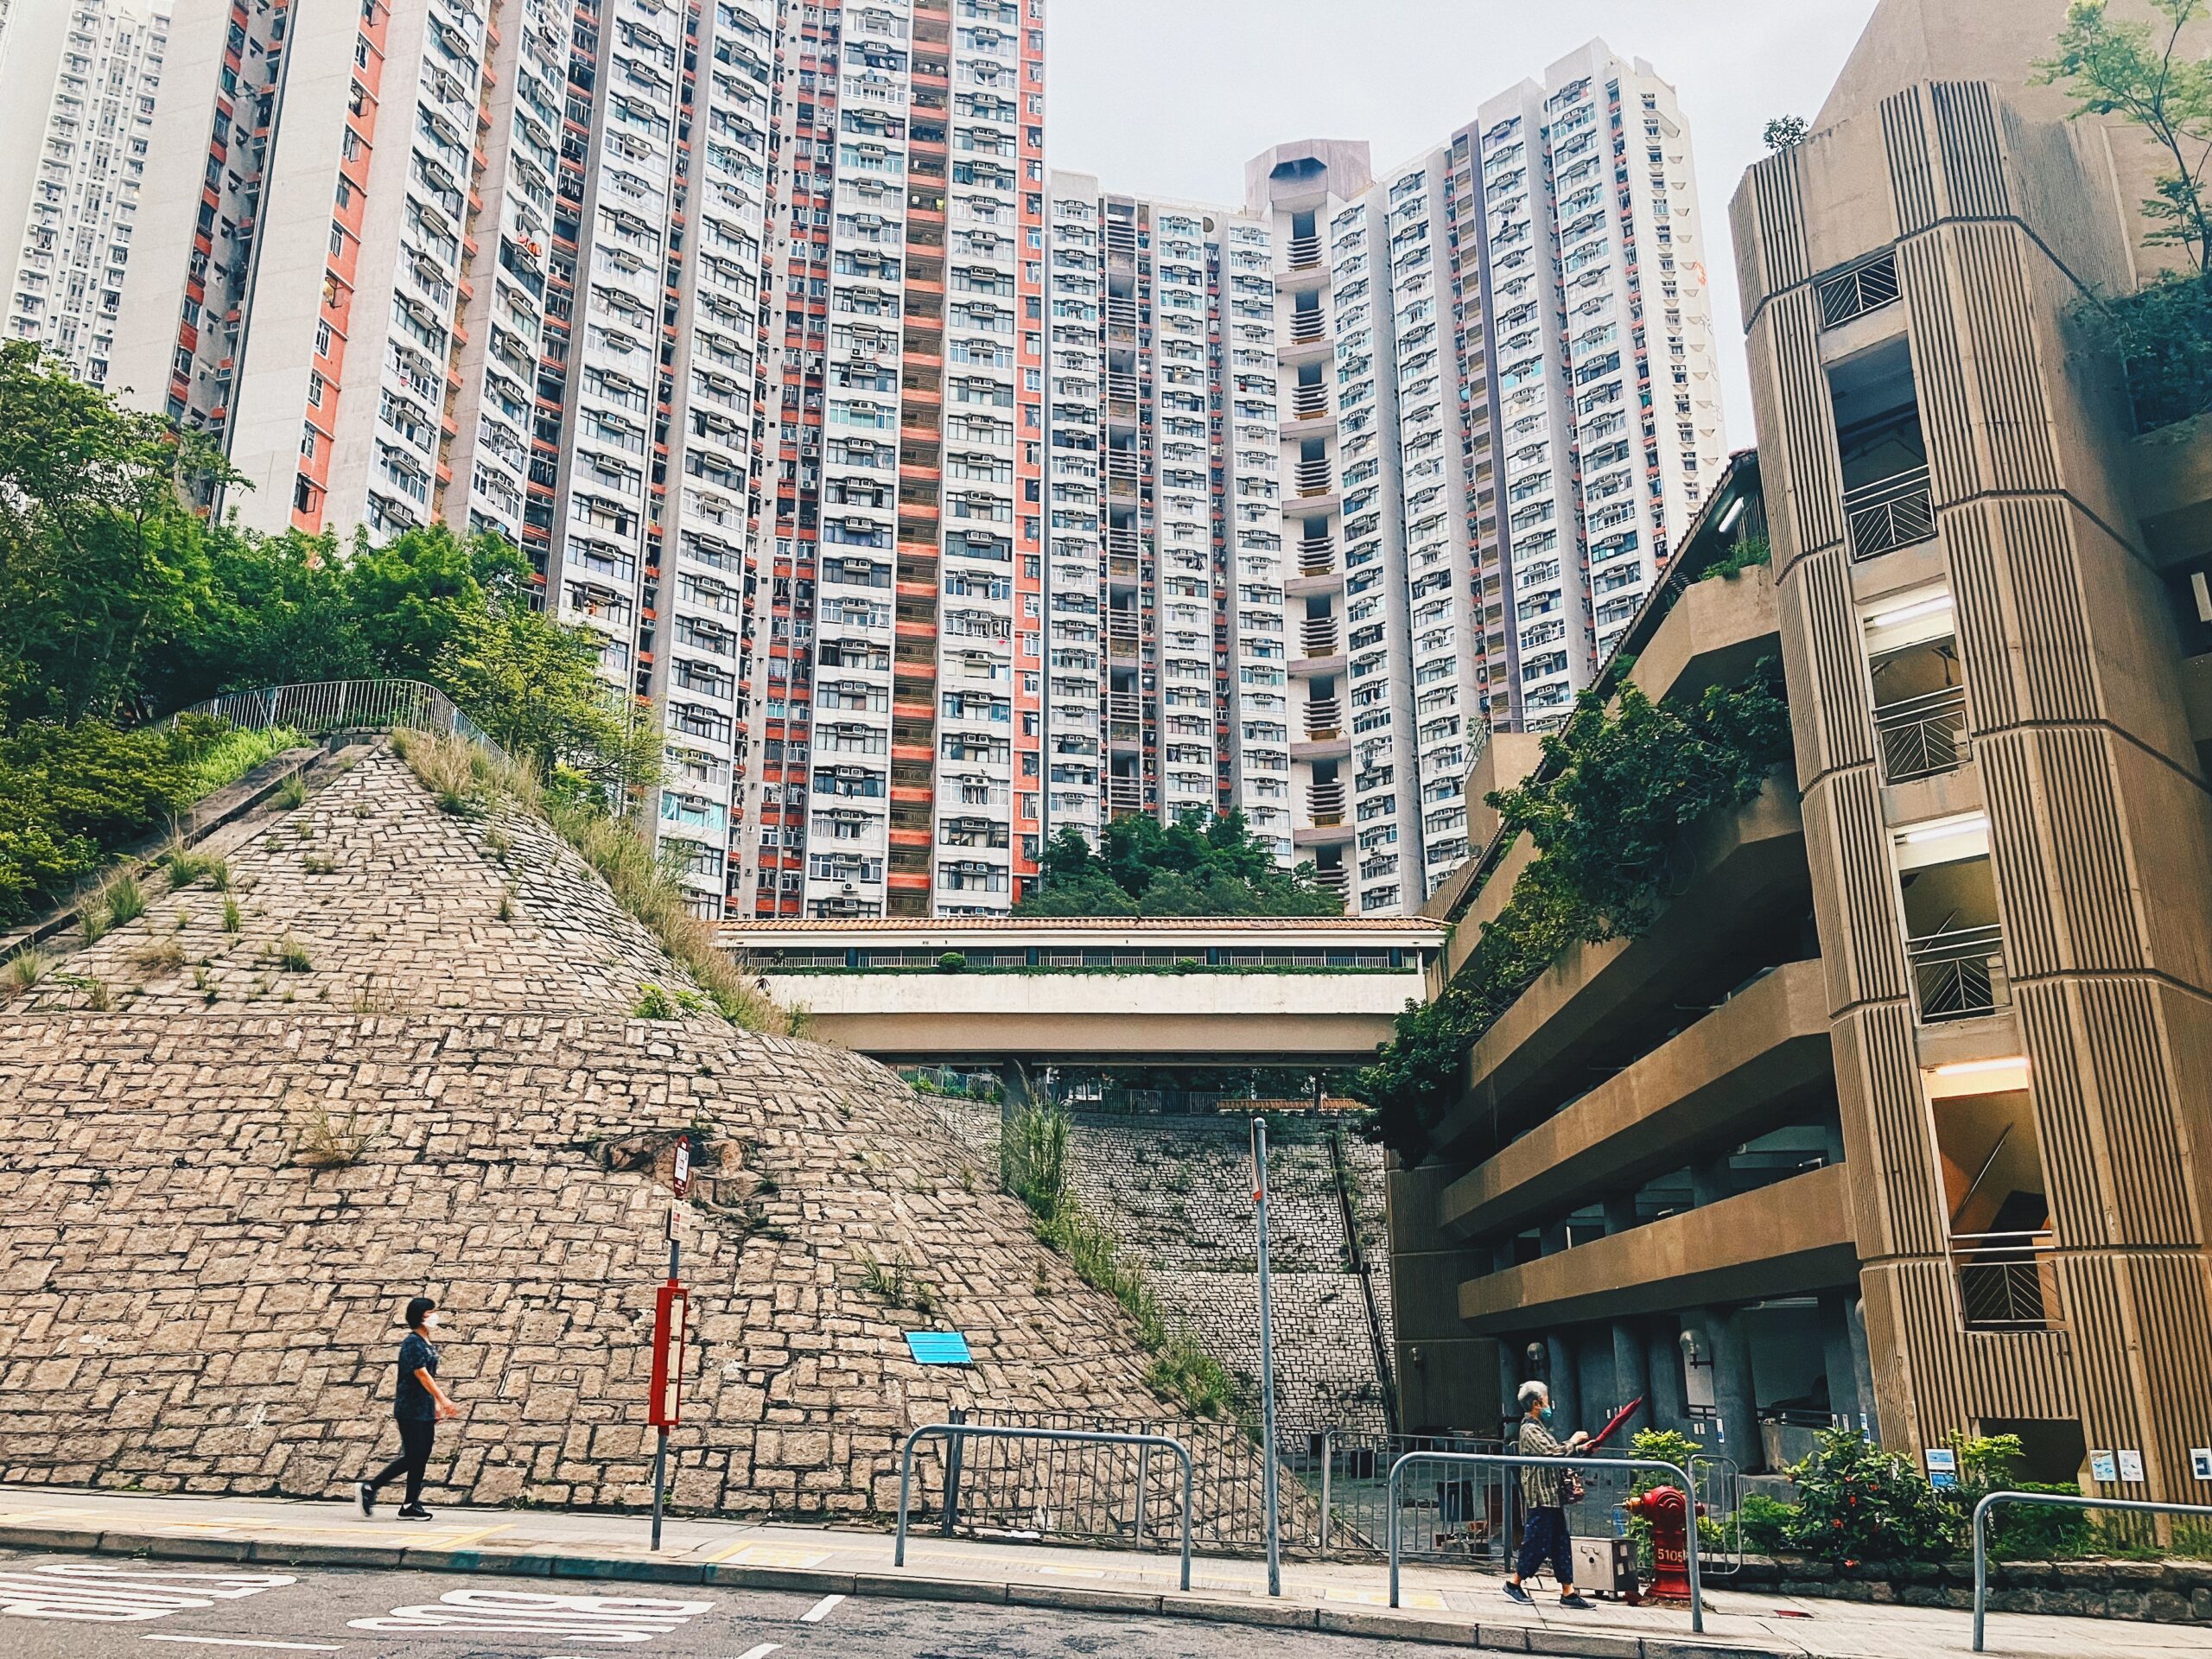 【香港公屋】九龍灣彩霞邨 難得保留中式庭園水池設計